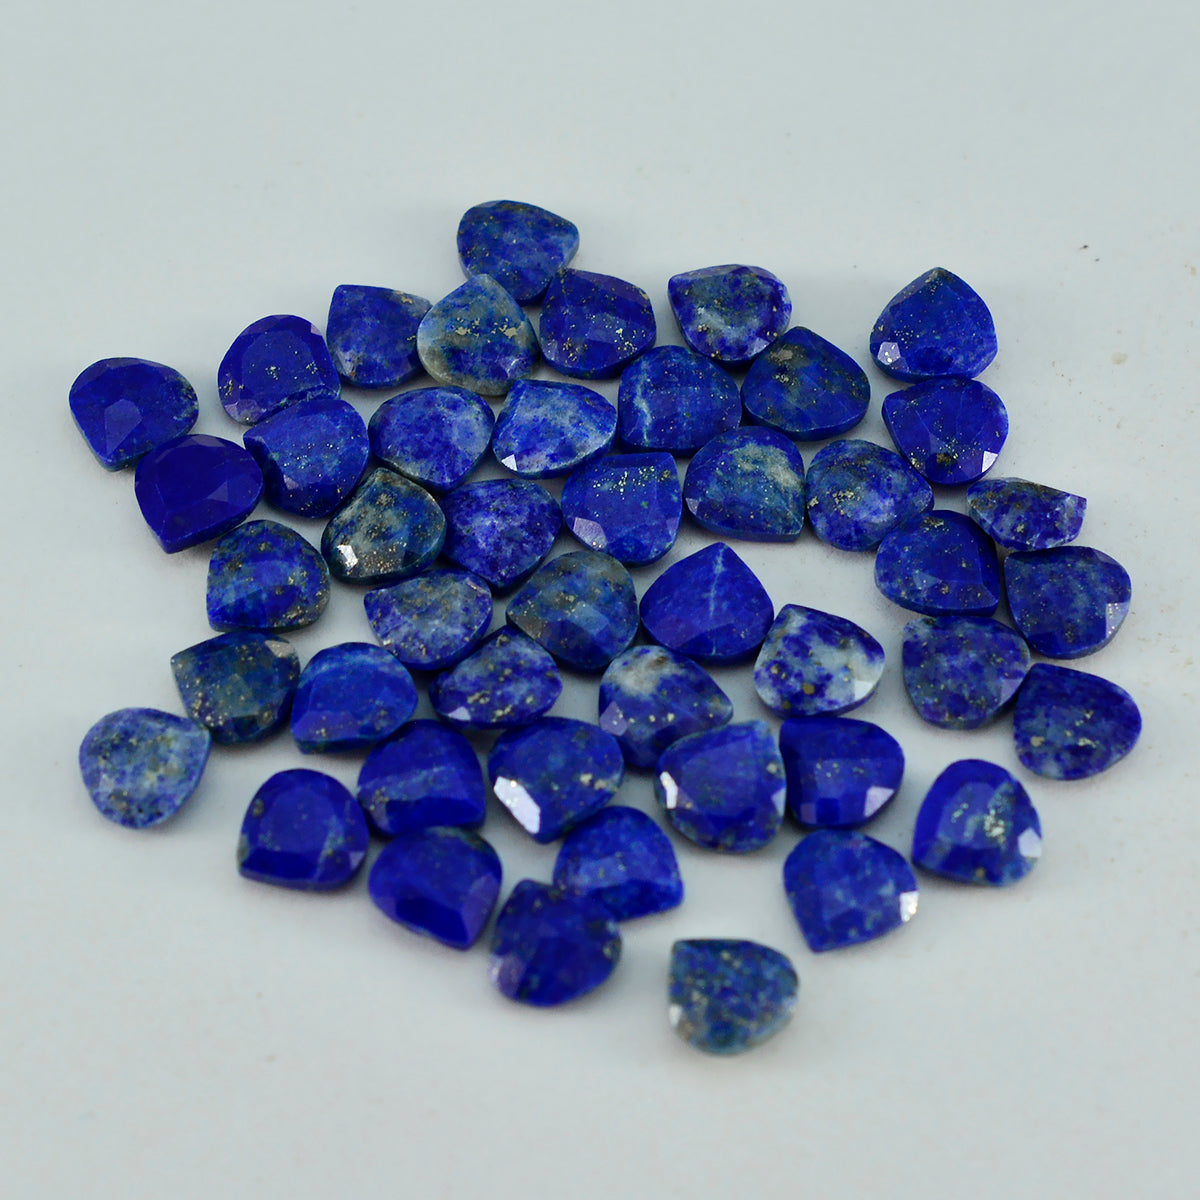 riyogems 1 шт., настоящие синие лазуриты, ограненные 7x7 мм, в форме сердца, фантастическое качество, свободные драгоценные камни